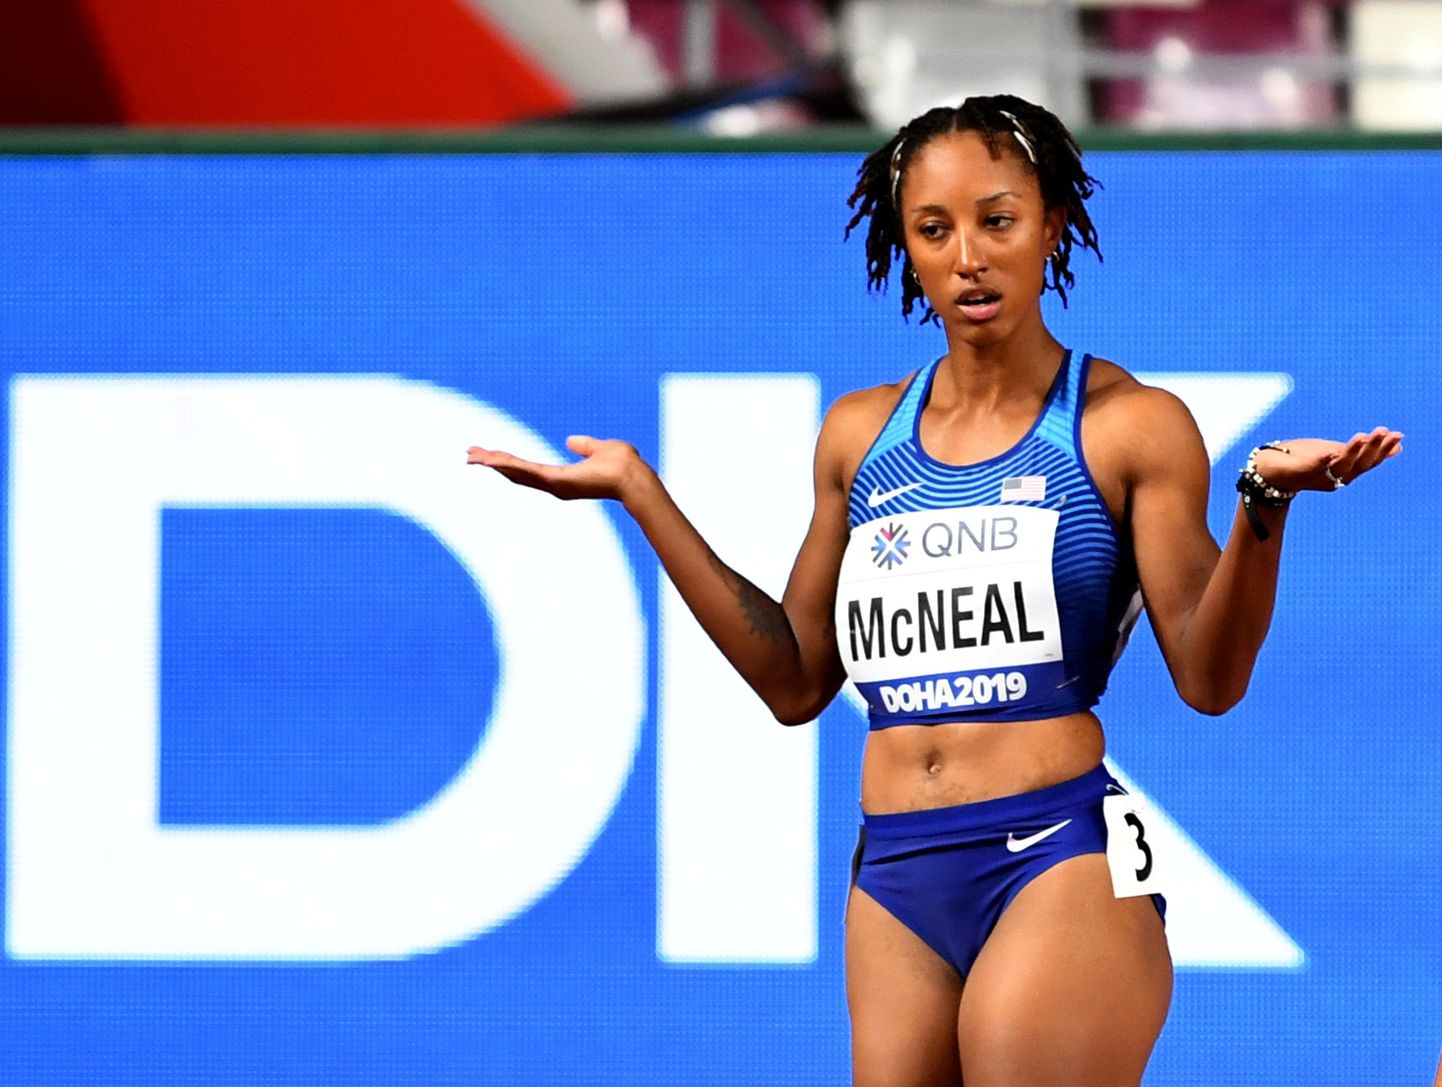 Doha MMil sai USA tõkkejooksja Brianna McNeal valestardi eest disklahvi.